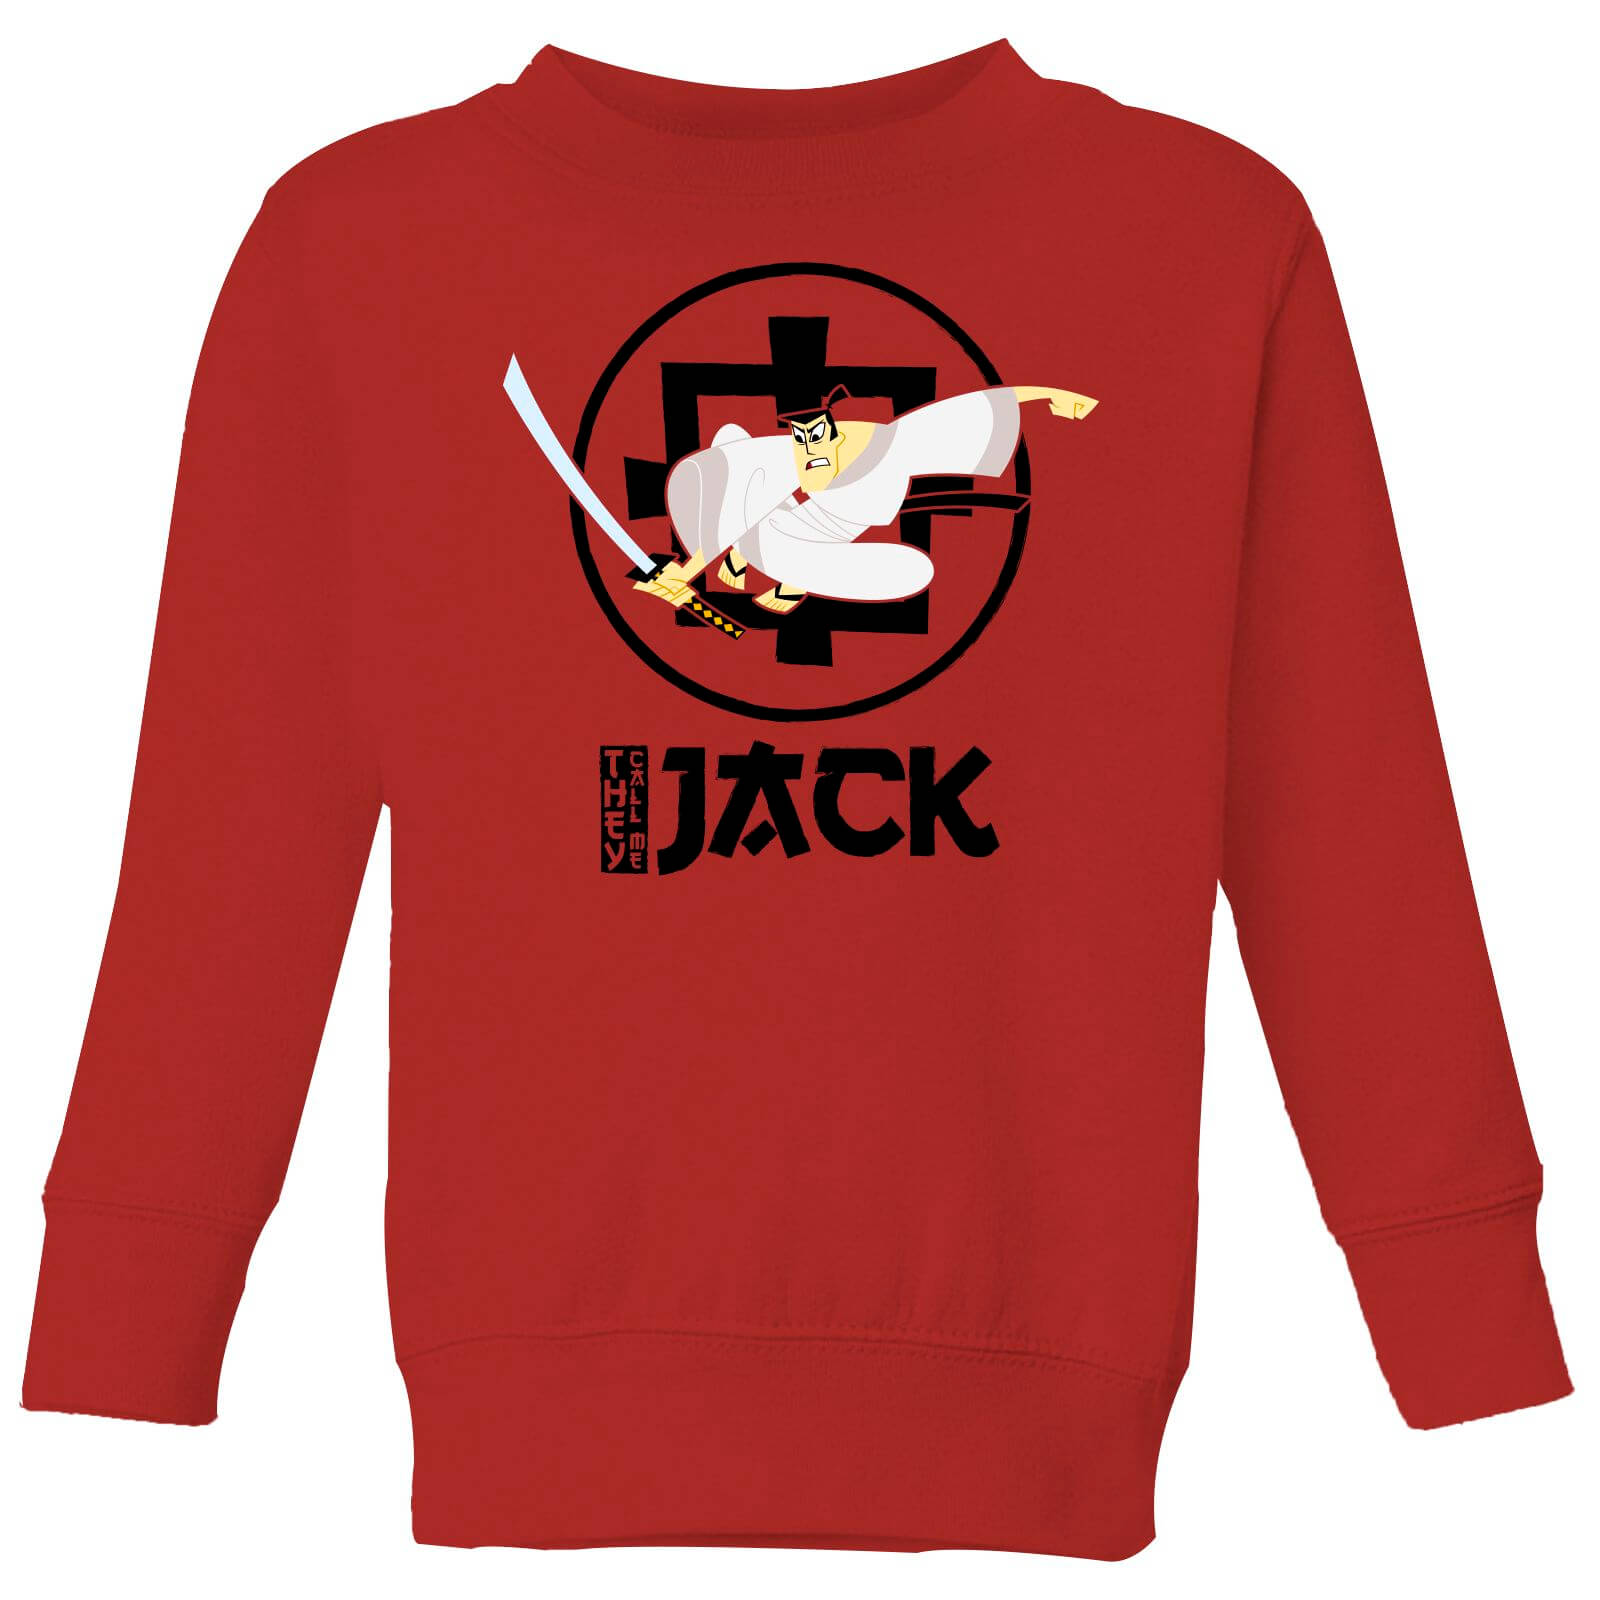 Samurai Jack They Call Me Jack Kids' Sweatshirt - Red - 3-4 Years - Red